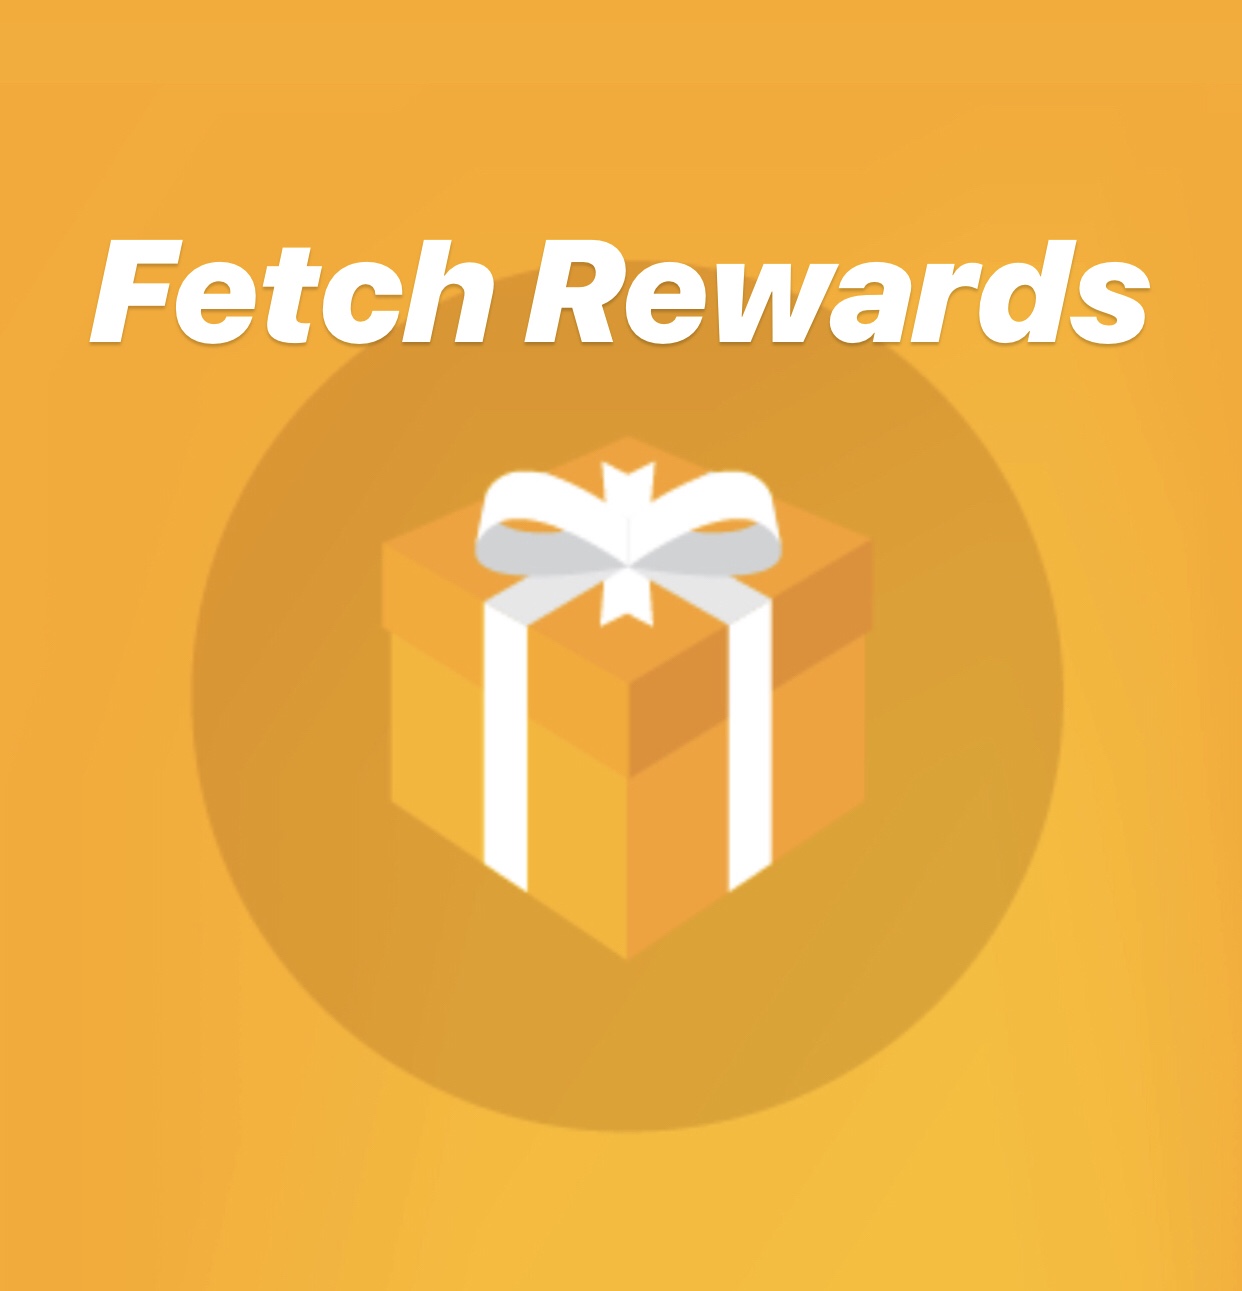 receipts 2021 for fetch rewards